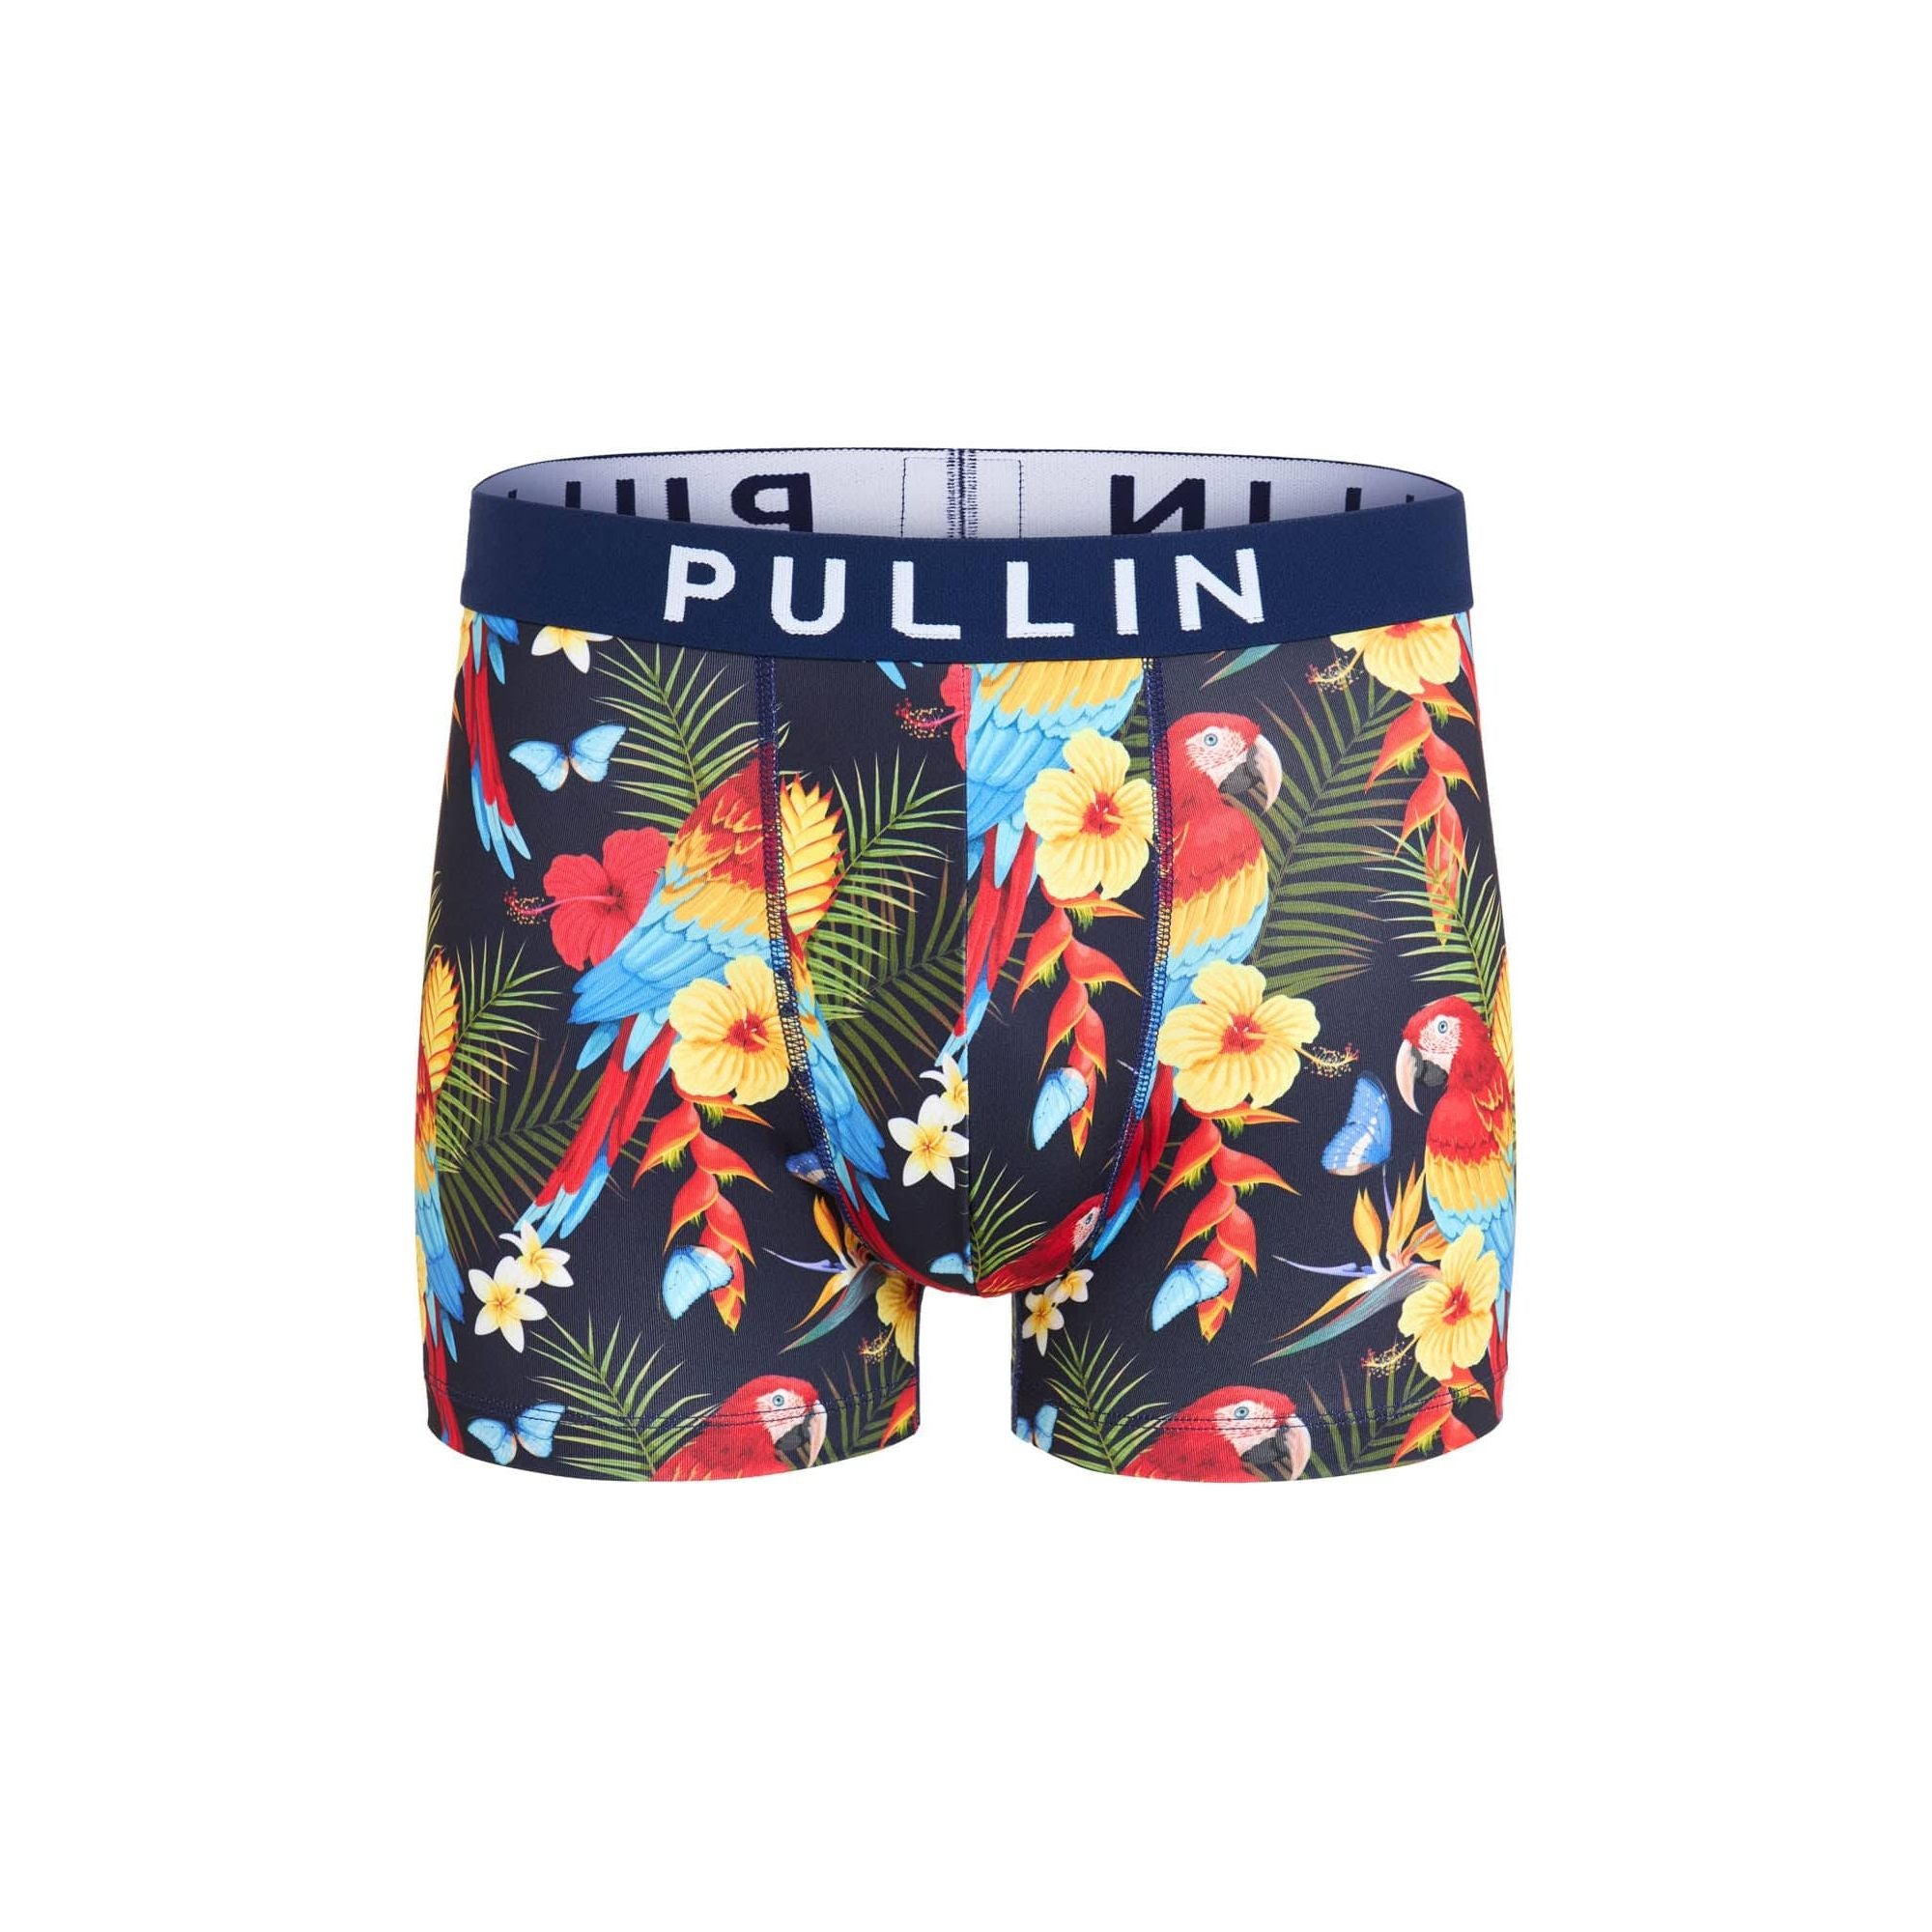 Pullin Fashion 2 PullintheHole Brief - Underground Clothing